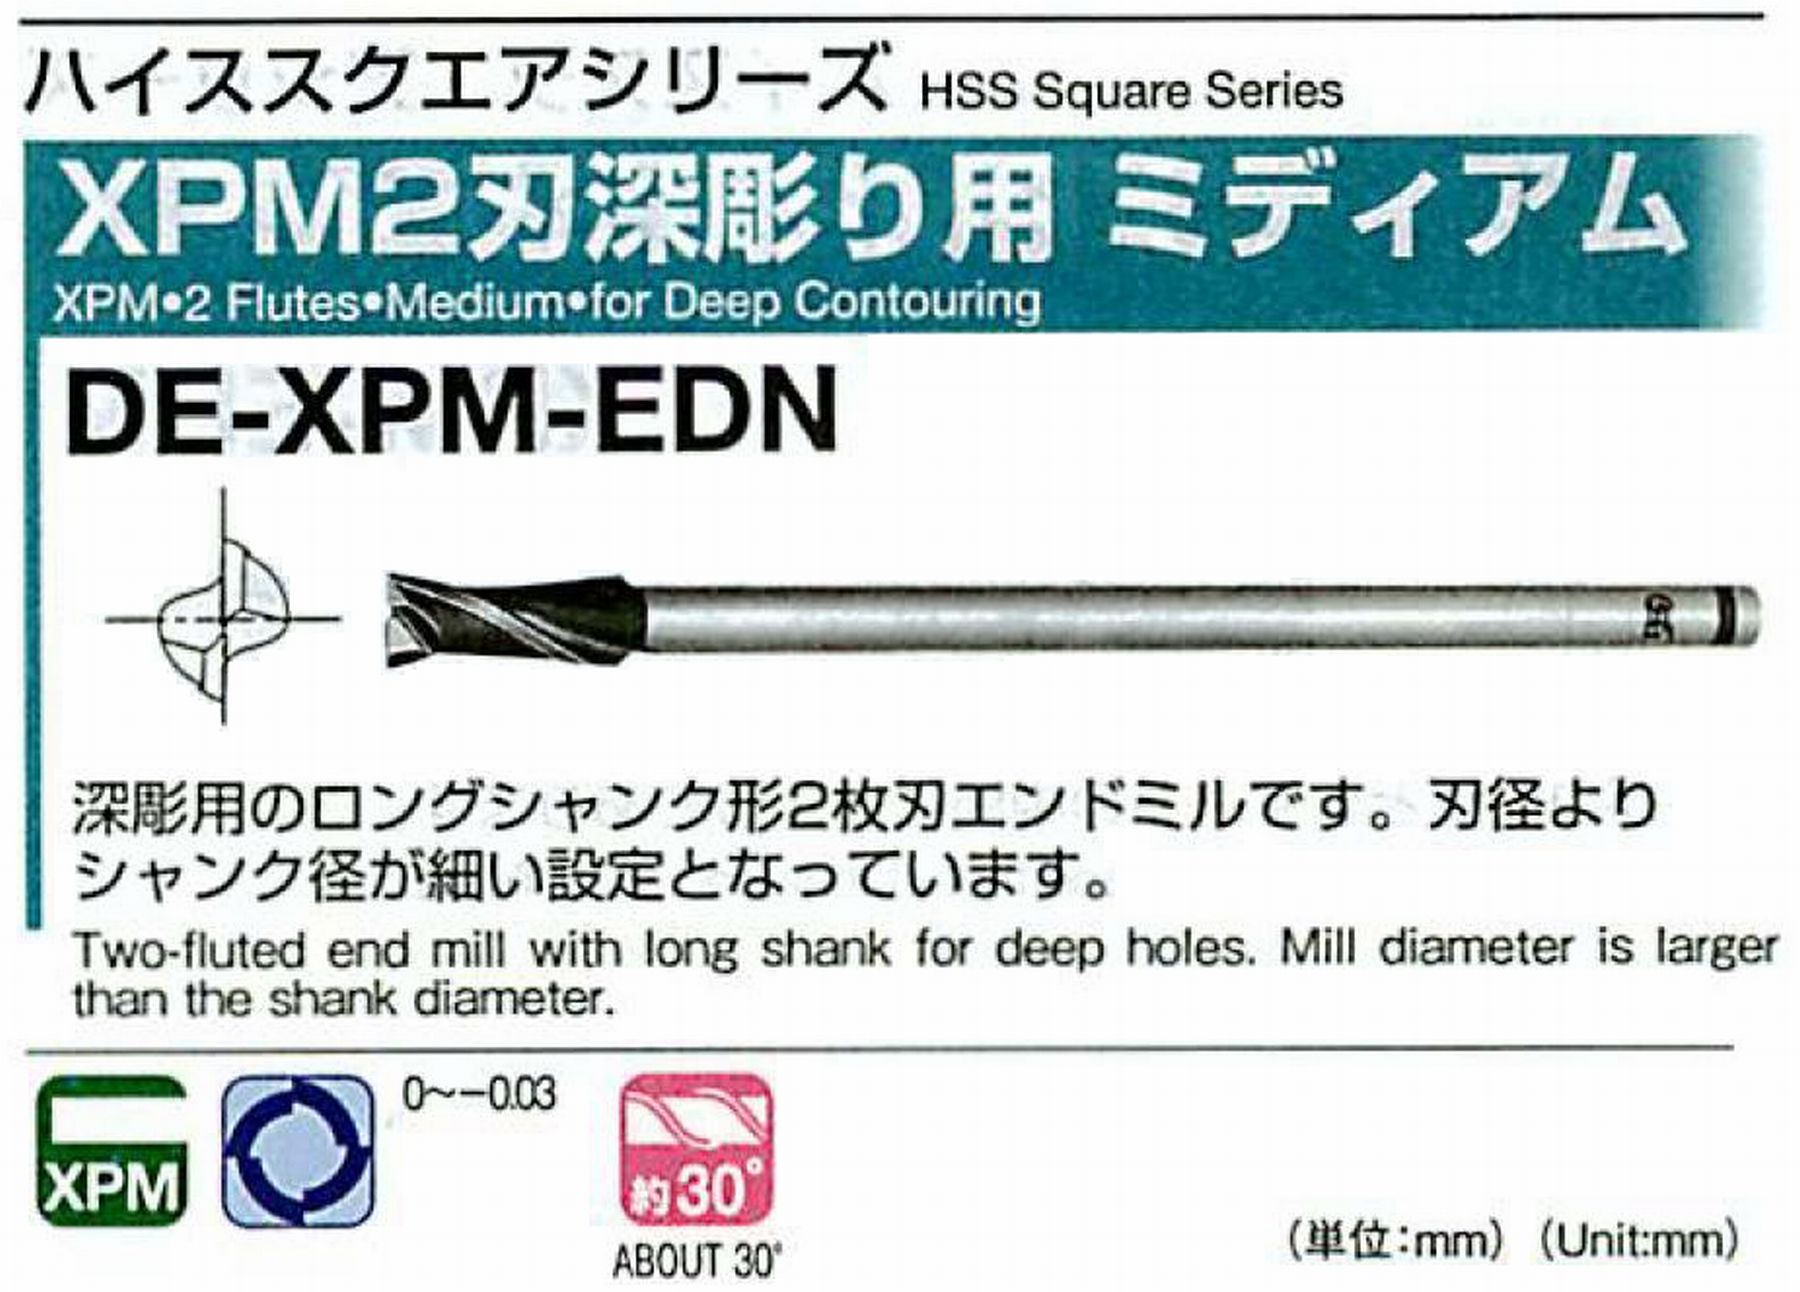 オーエスジー/OSG XPM2刃深彫り用 ミディアム DE-XPM-EDN 外径25 全長225 刃長50 シャンク径20mm